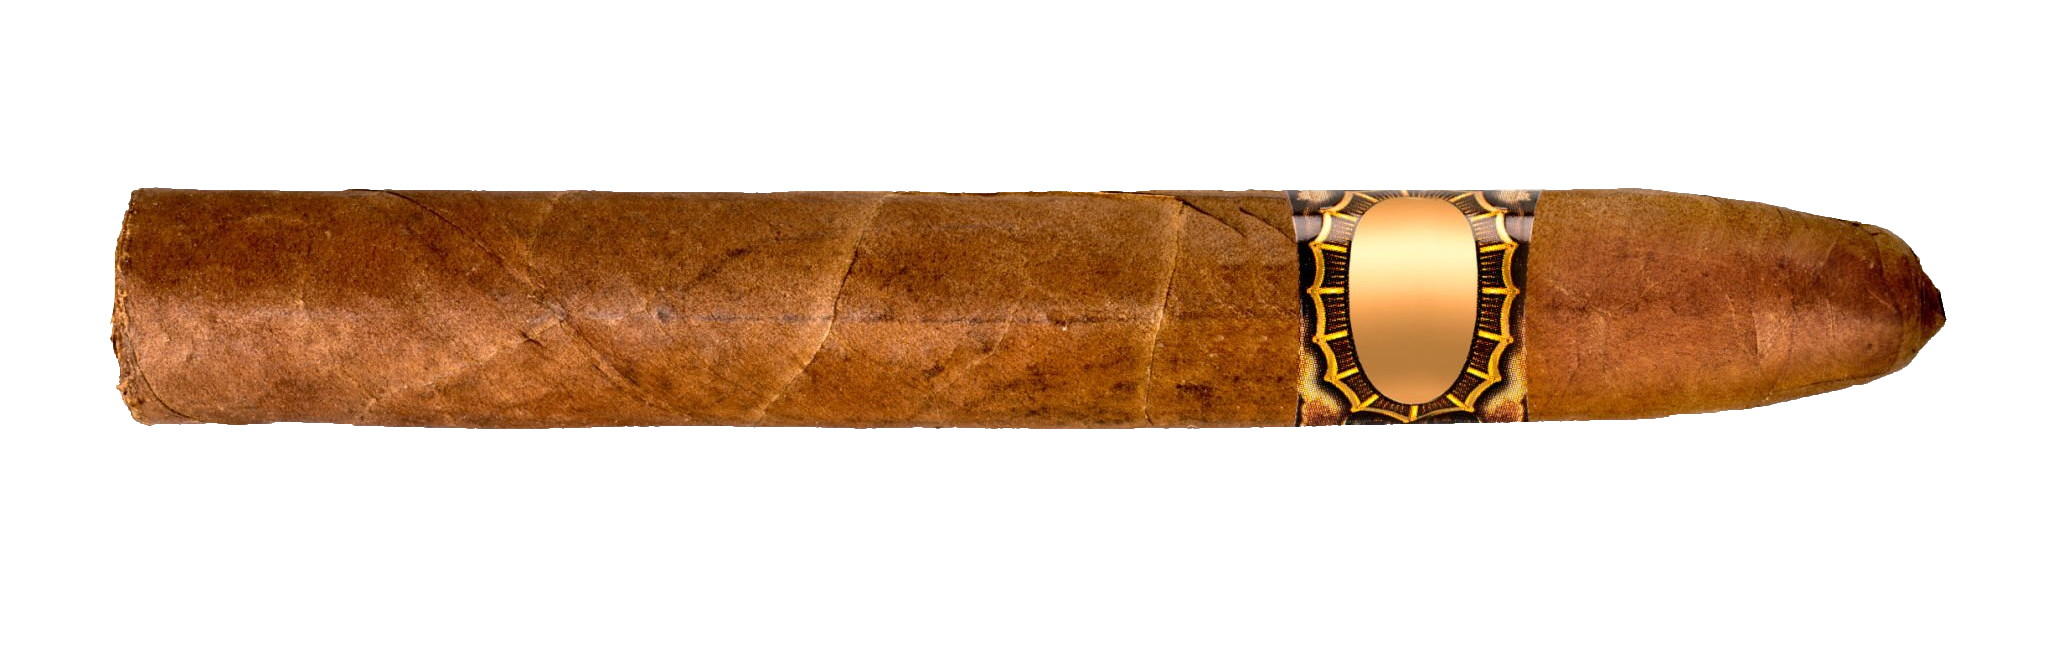 cigar-62